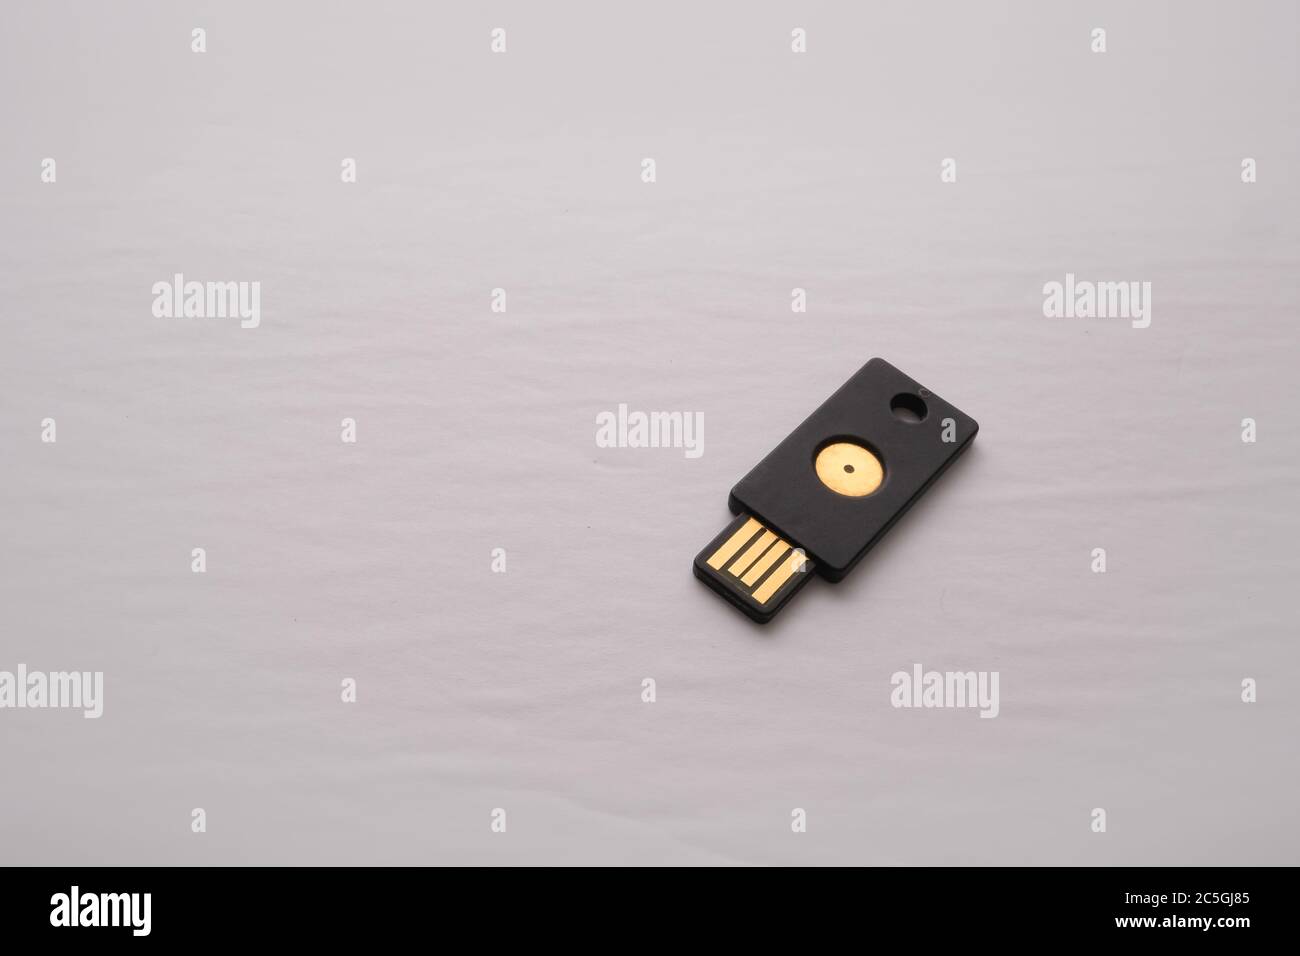 Un périphérique USB isolé contenant une clé de sécurité est utilisé pour l'authentification à deux facteurs, ajoutant une couche de sécurité aux connexions et aux autorisations en ligne. Banque D'Images